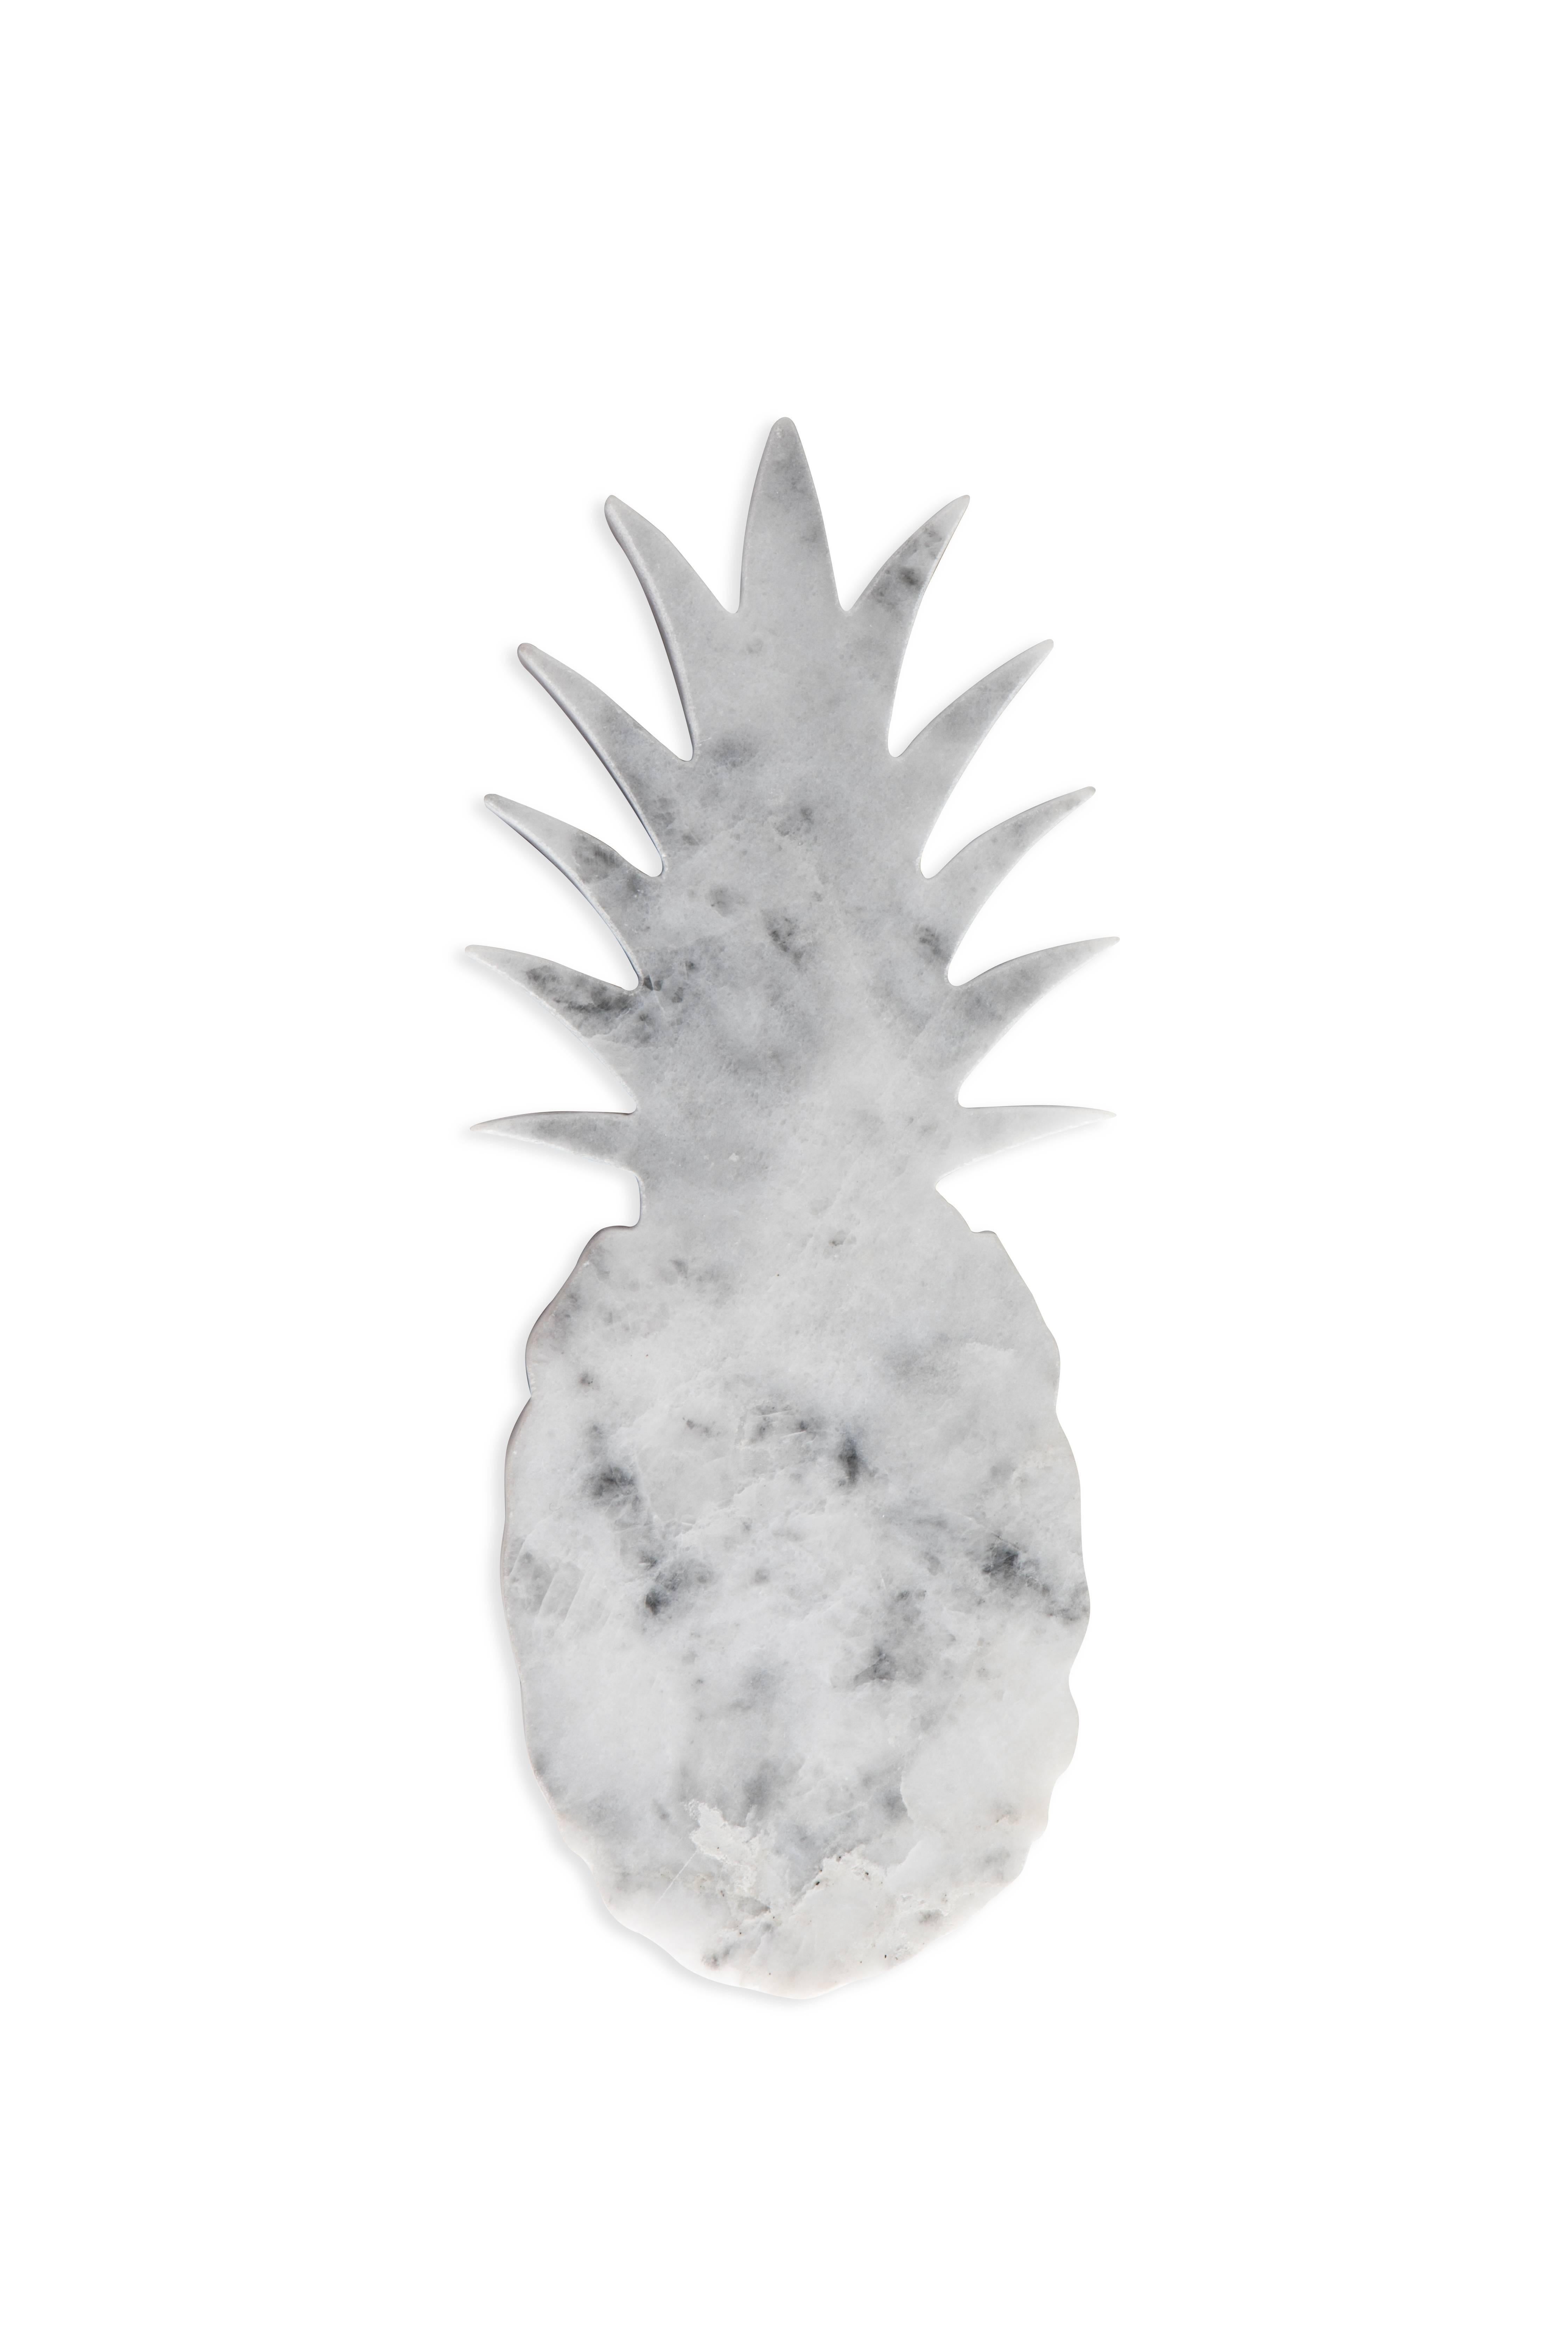 Kleiner Briefbeschwerer aus weißem Carrara-Marmor in Form einer Ananas. Jedes Stück ist in gewisser Weise einzigartig (da jeder Marmorblock unterschiedliche Maserungen und Schattierungen aufweist) und wird in Italien handgefertigt. Geringfügige